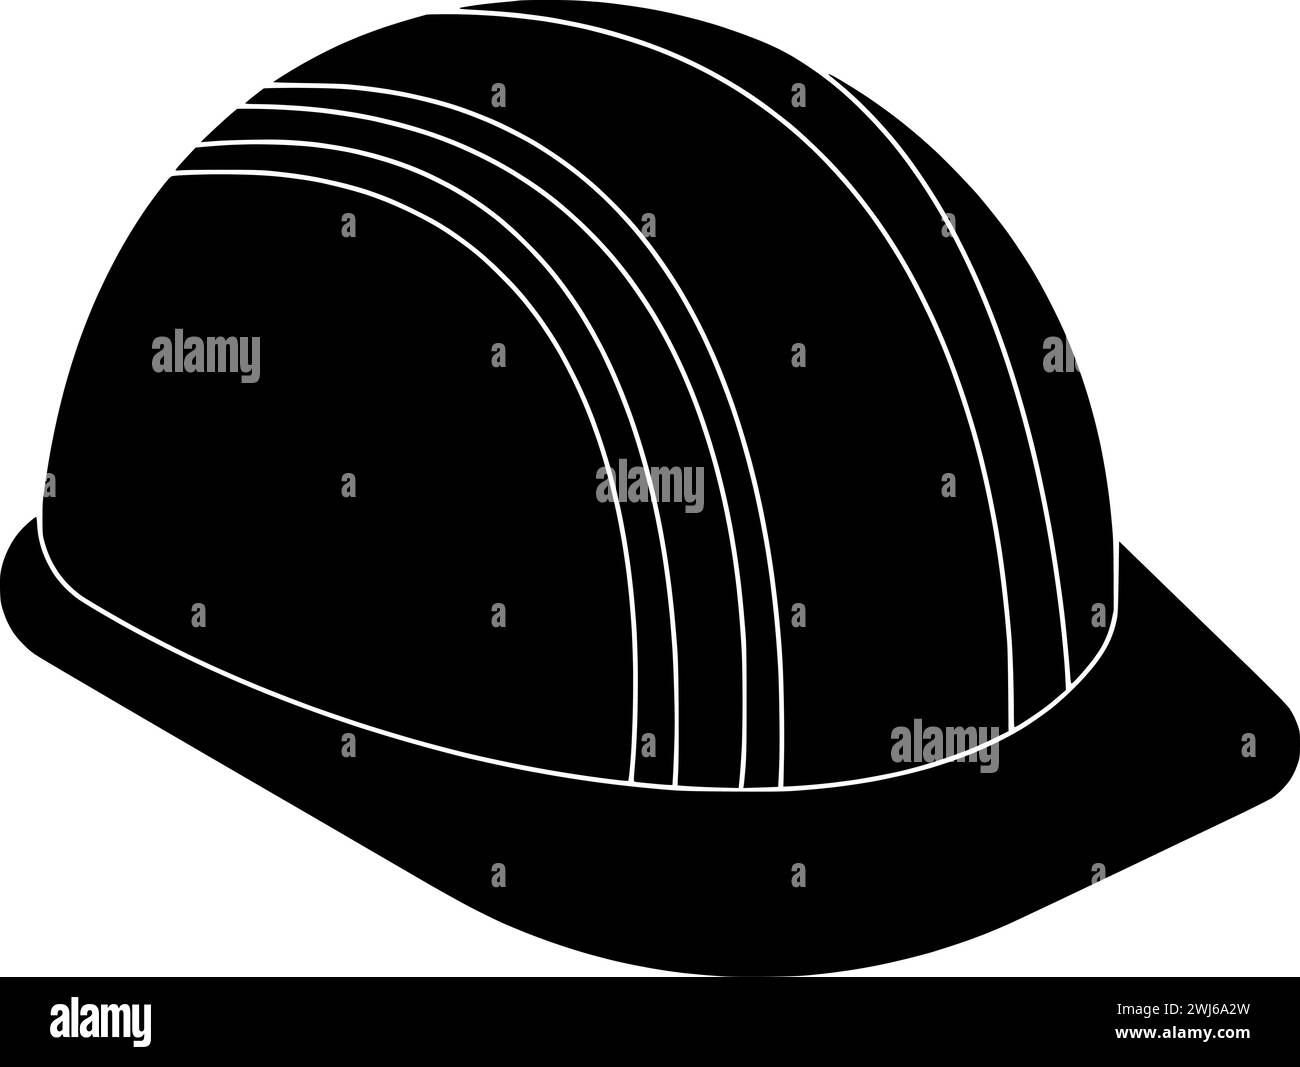 Schwarze Helmsilhouette oder flache Sicherheitsillustration des Ingenieurlogos Miner für Arbeiter mit Minensymbol und Bauform als Schutz für MINI Stock Vektor